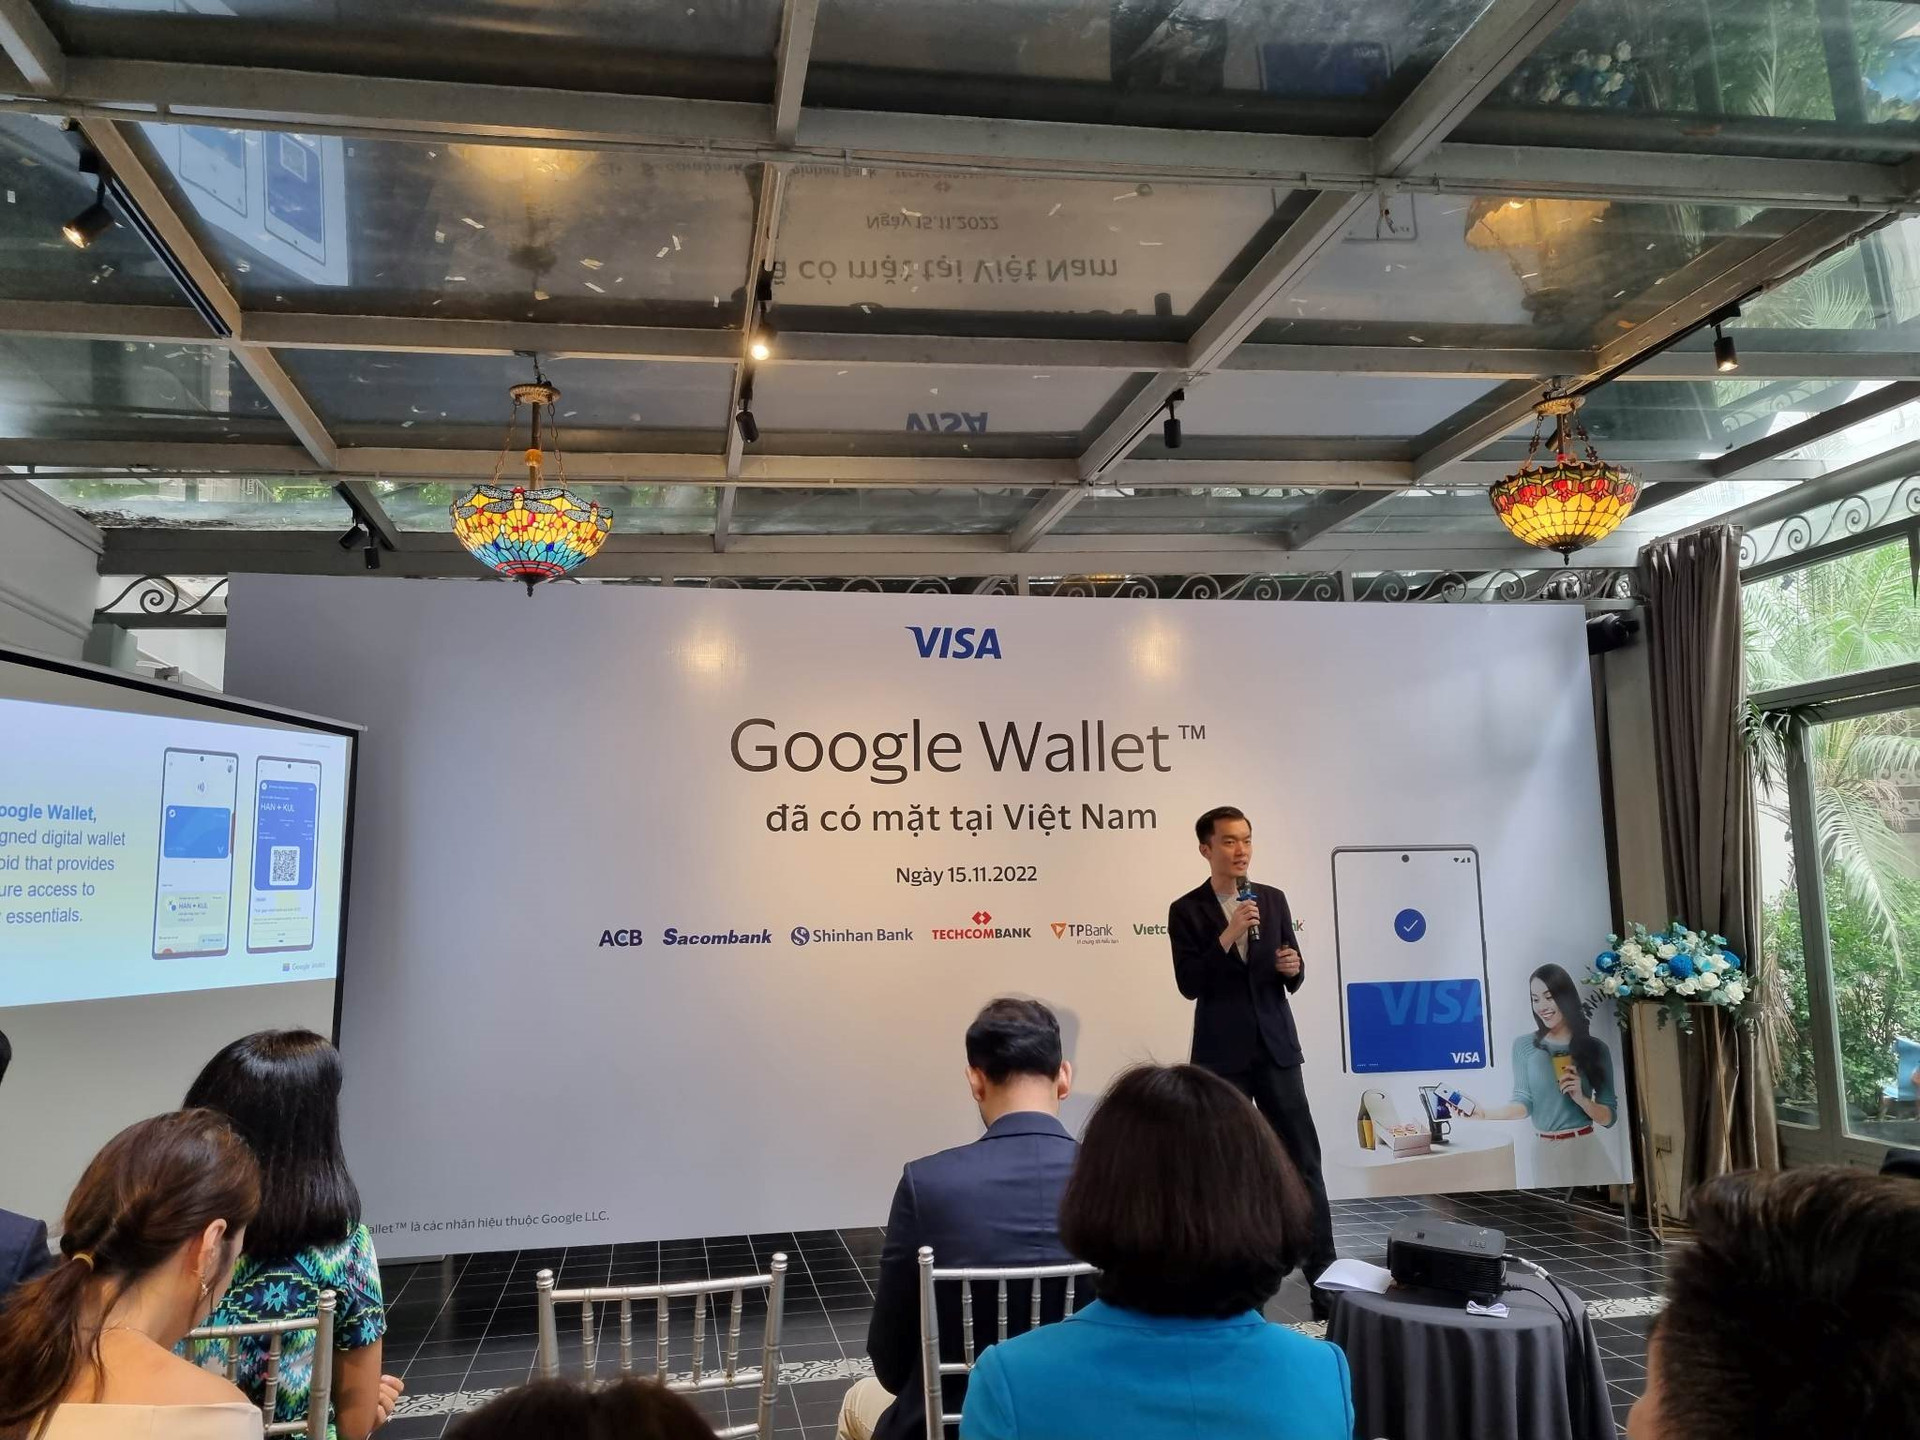 Thị trường ví điện tử thêm nóng: Google Wallet chính thức có mặt tại Việt Nam, người dùng thanh toán bằng điện thoại Android hoặc đồng hồ Wear OS